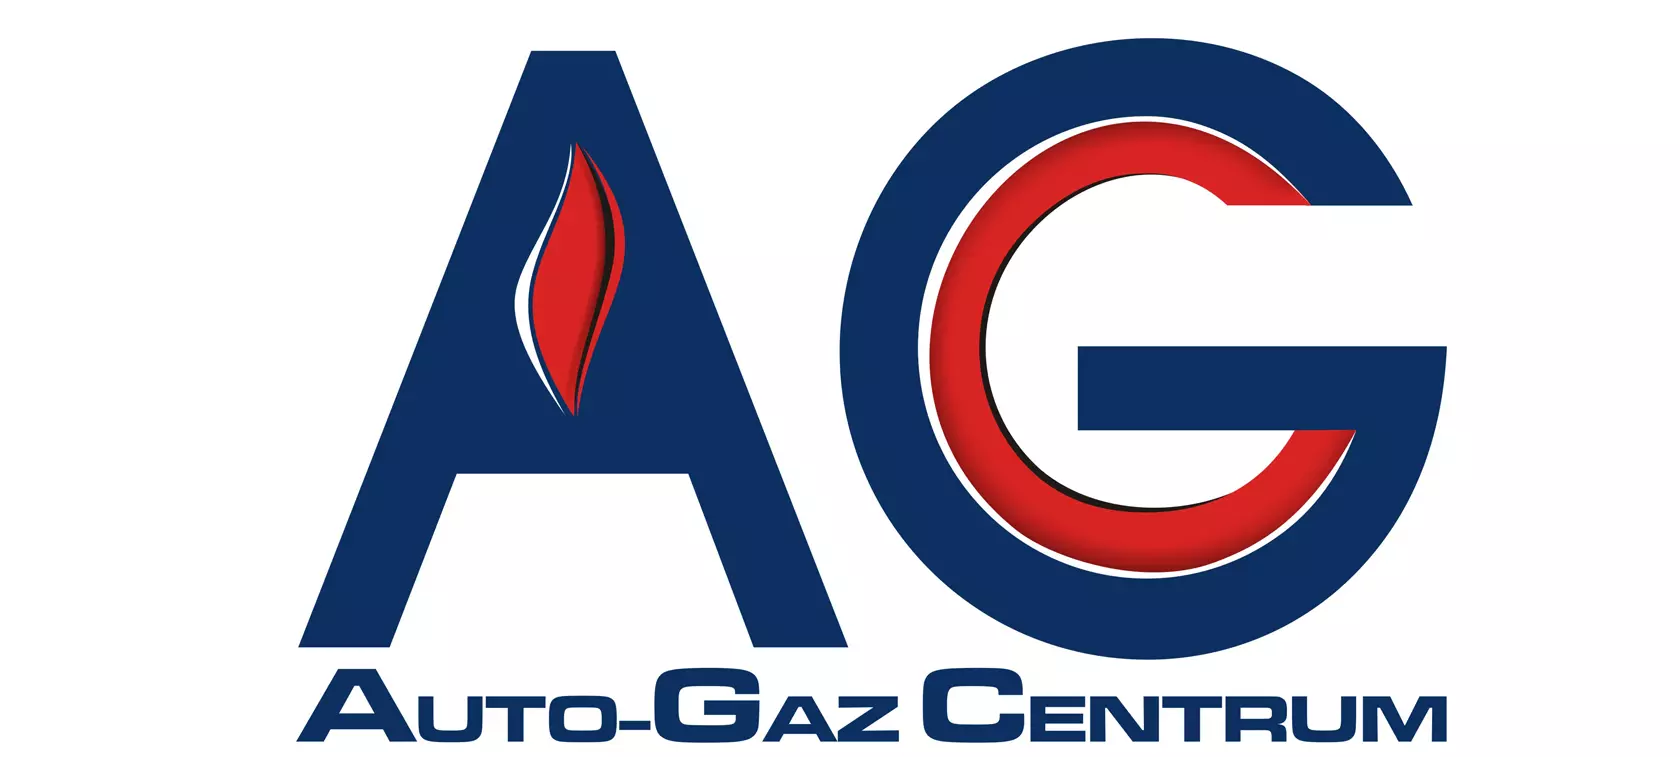 Powstaje Centrum Badawczo-Rozwojowe Auto-Gaz Centrum